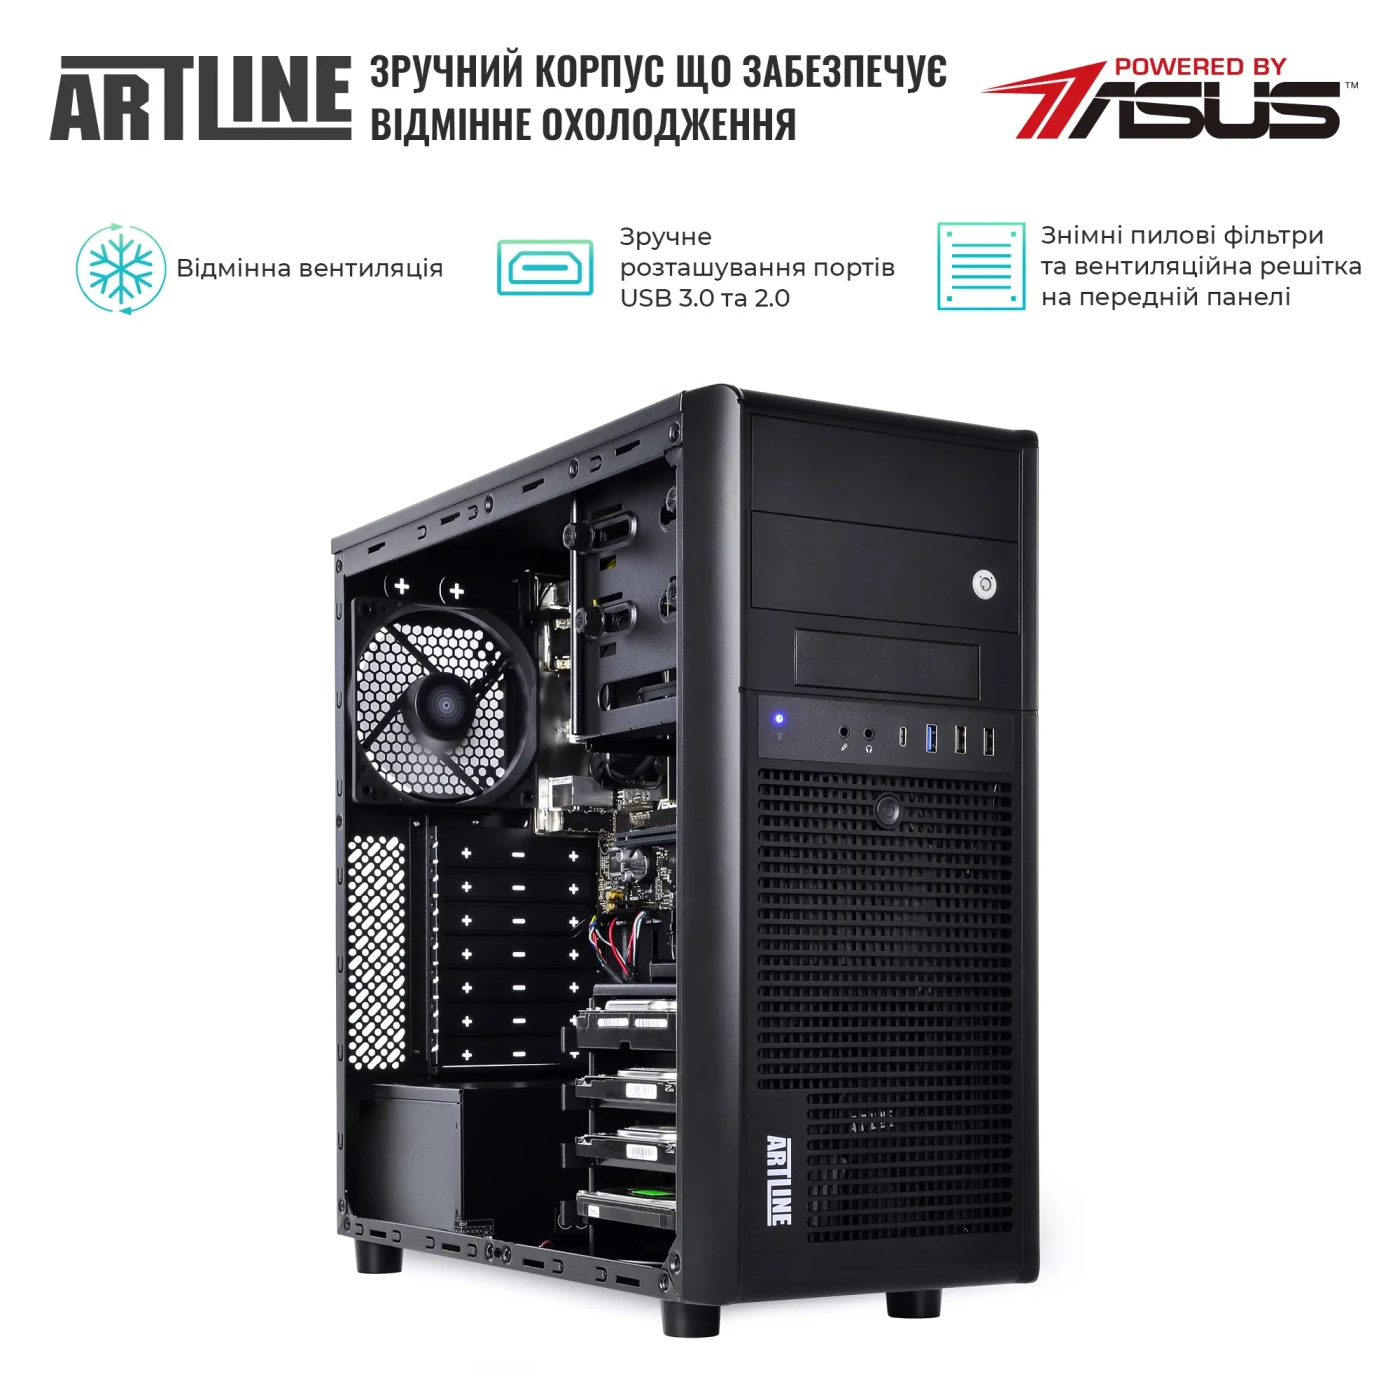 Купить Сервер ARTLINE Business T35v29 - фото 3